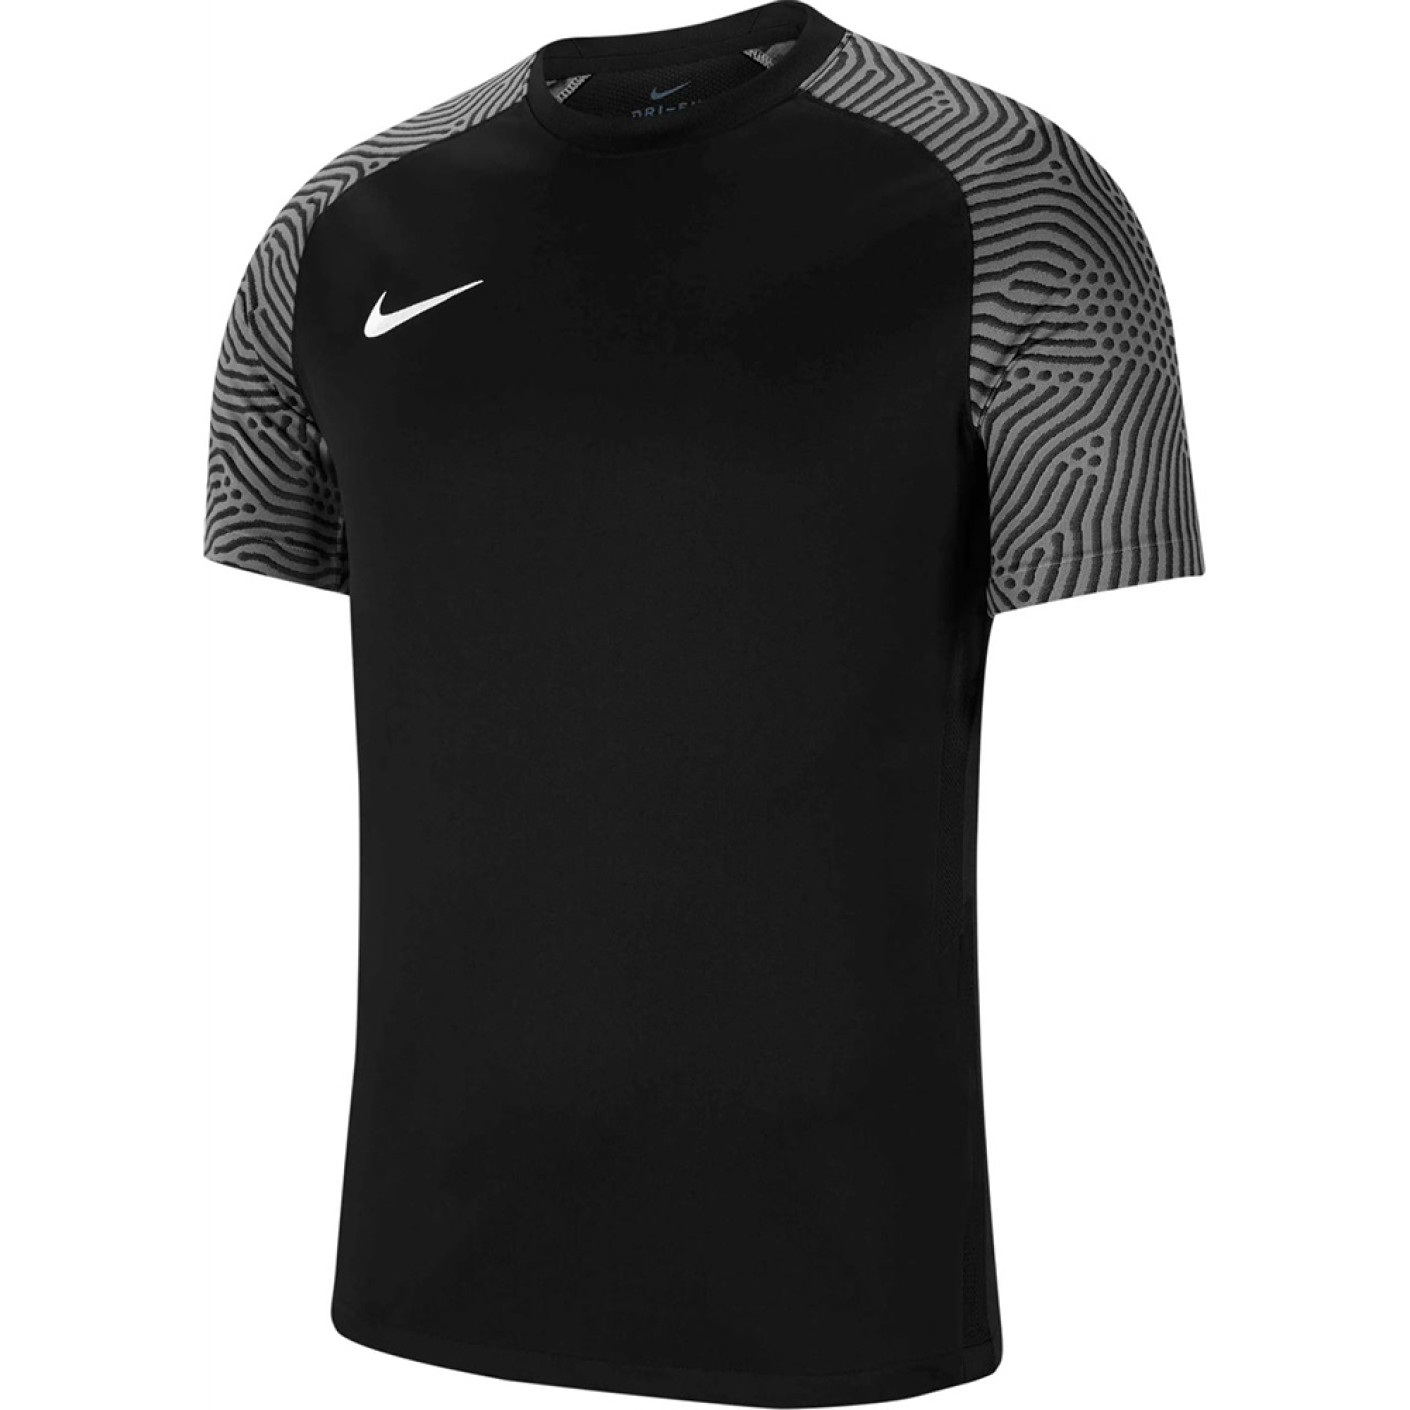 Nike Football Shirt Strike II Kids Black